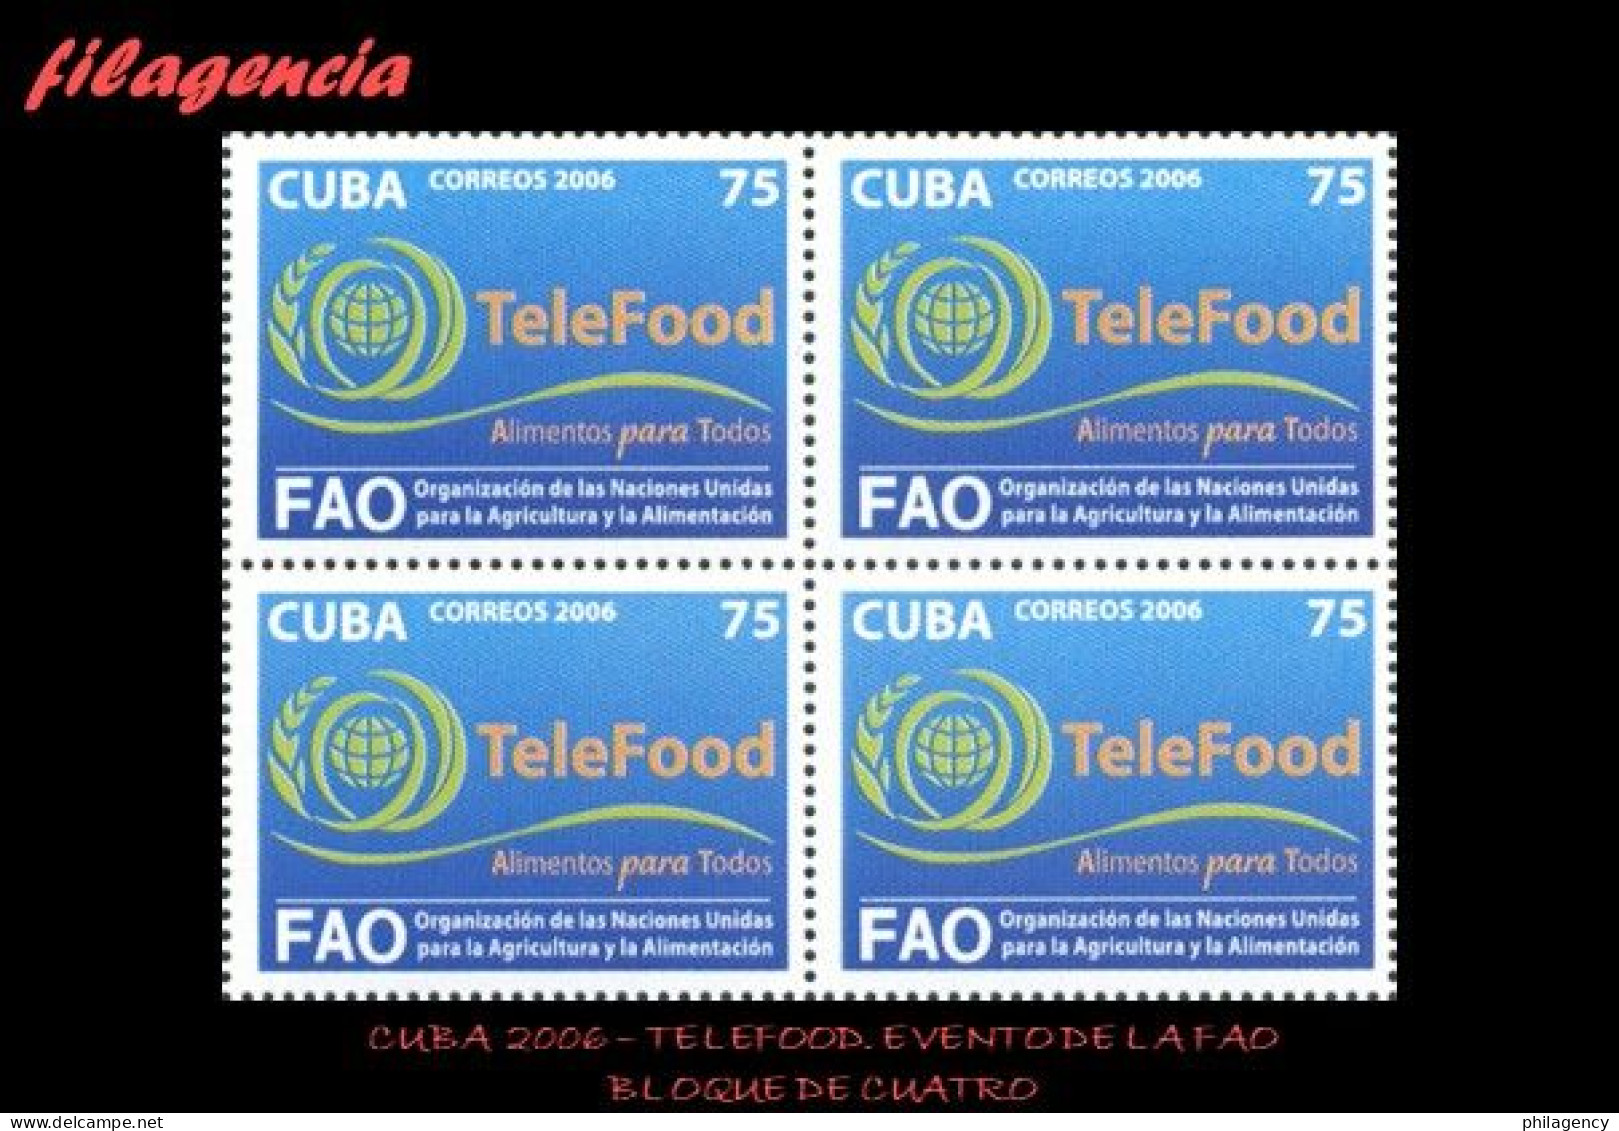 CUBA. BLOQUES DE CUATRO. 2006-29 EVENTO DE LA FAO TELEFOOD - Ongebruikt